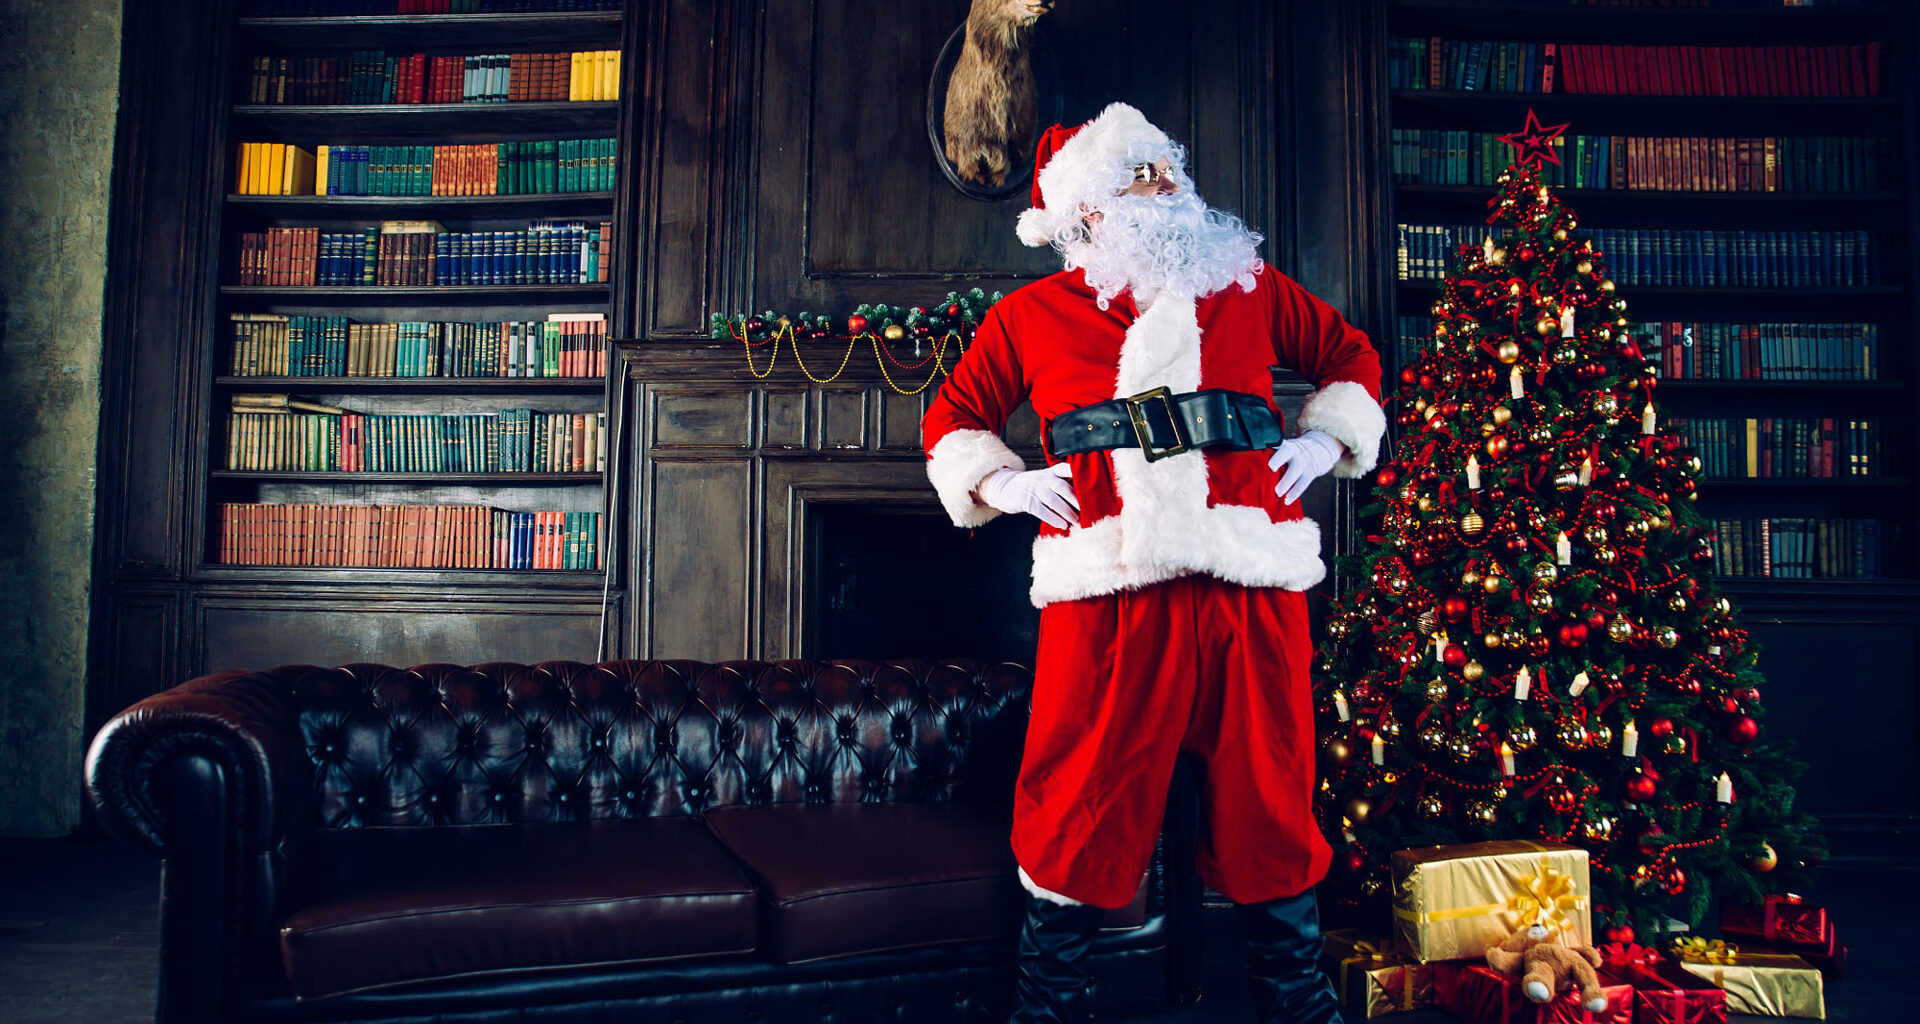 El Santa Claus de Mazón dio magia en Hermosillo por más de 30 años